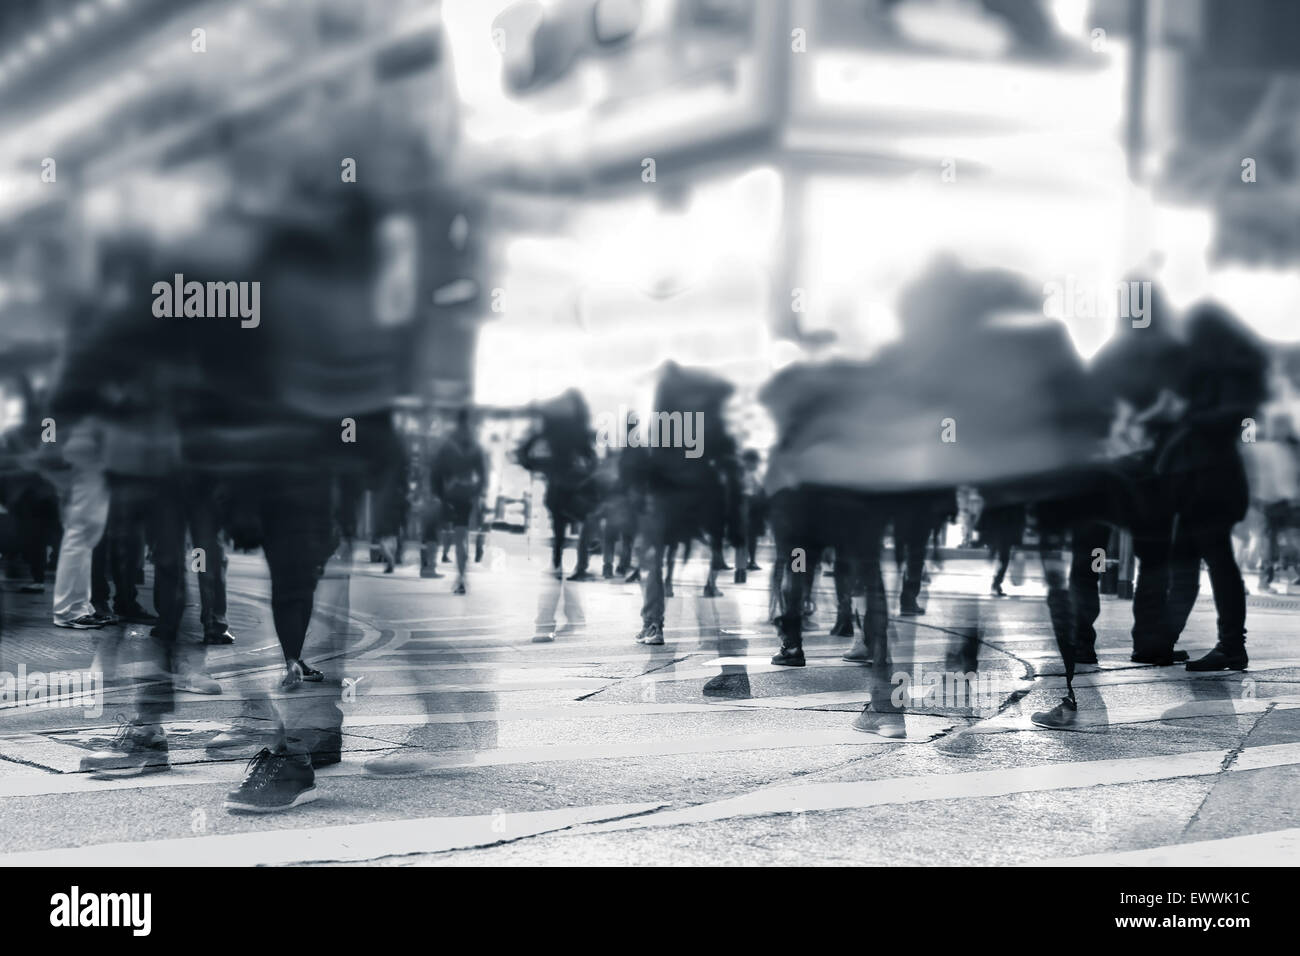 Imagen borrosa de gente moviéndose en las concurridas calles de la ciudad de noche. Tonificación de arte abstracto de fondo urbano. Hong Kong Foto de stock